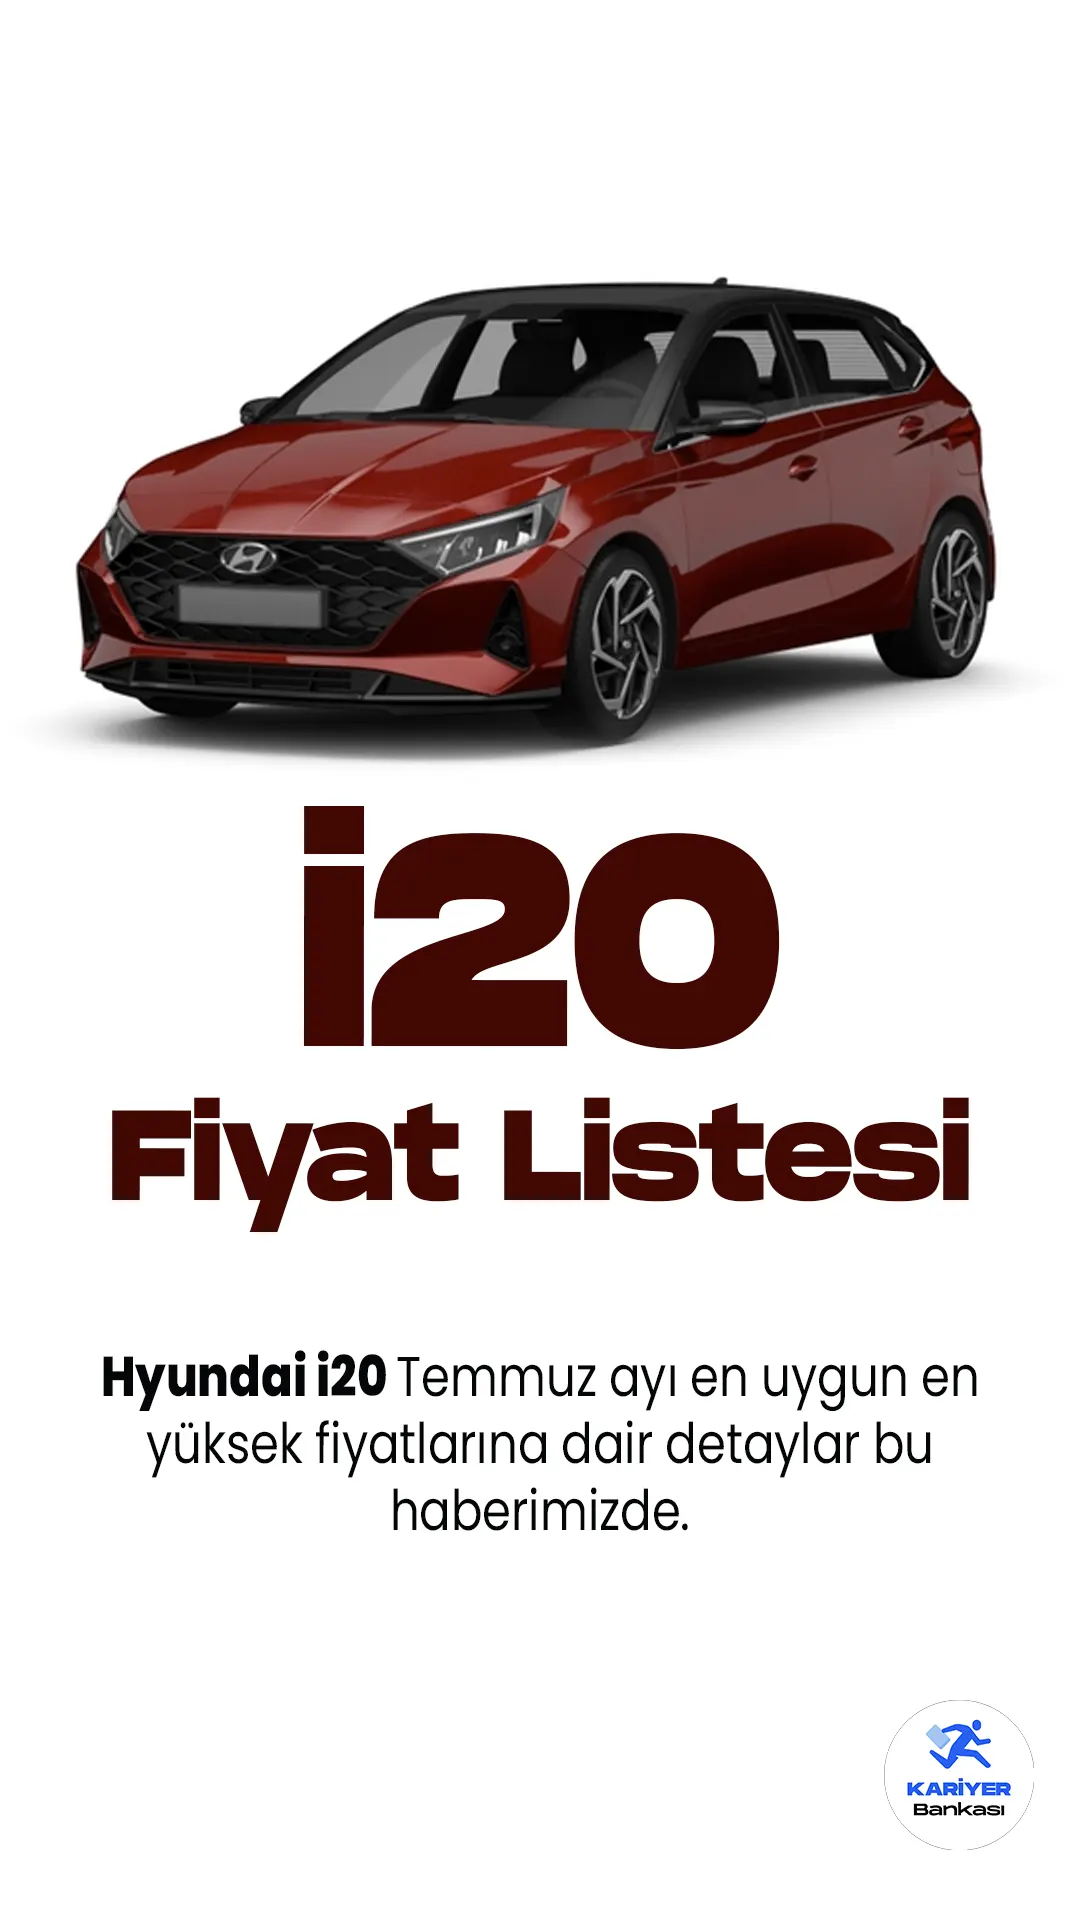 Hyundai i20 Temmuz Fiyat Listesi Yayımlandı.Hyundai, kompakt sınıfta dikkat çeken araç modeli i20'yi güncelleyerek yeniden tanıttı. Yenilikçi tasarımı, teknolojik donanımları ve performansıyla öne çıkan yeni i20, otomobil tutkunlarının gözdesi olmaya devam ediyor.